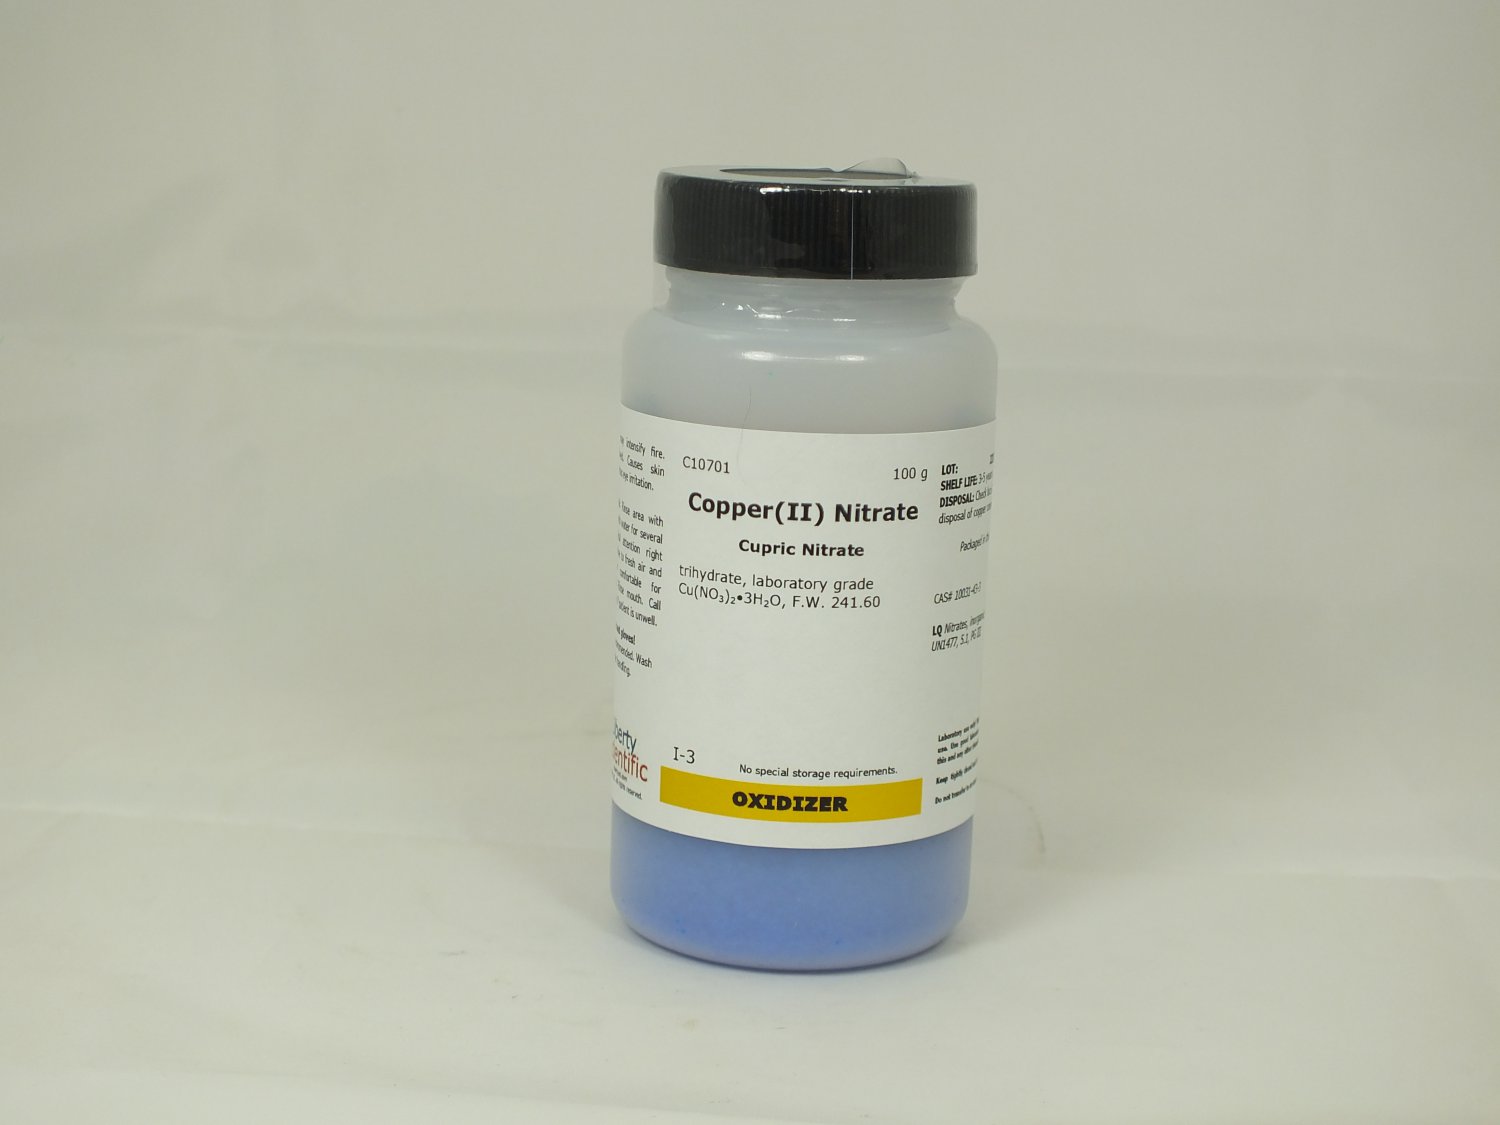 Copper(II) Nitrate, trihydrate, 100 g (C10701)